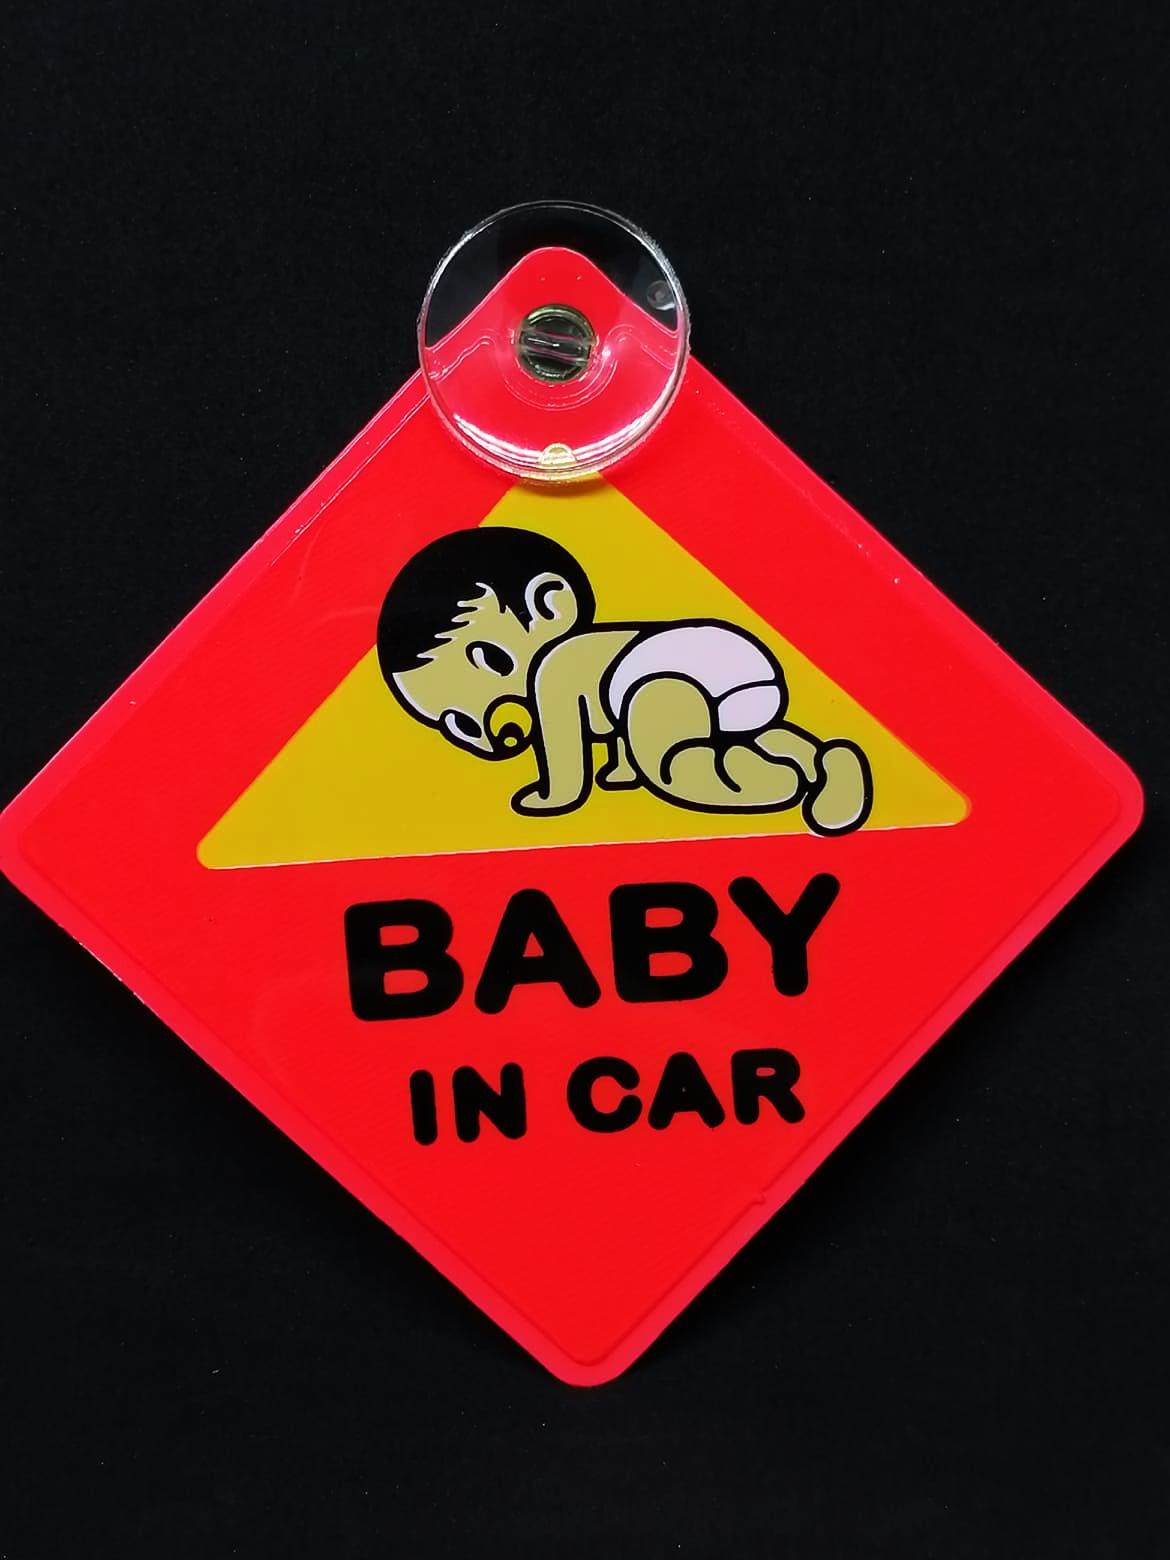 Baby in car จุ๊บสะท้อนแสง สีส้ม/เหลือง